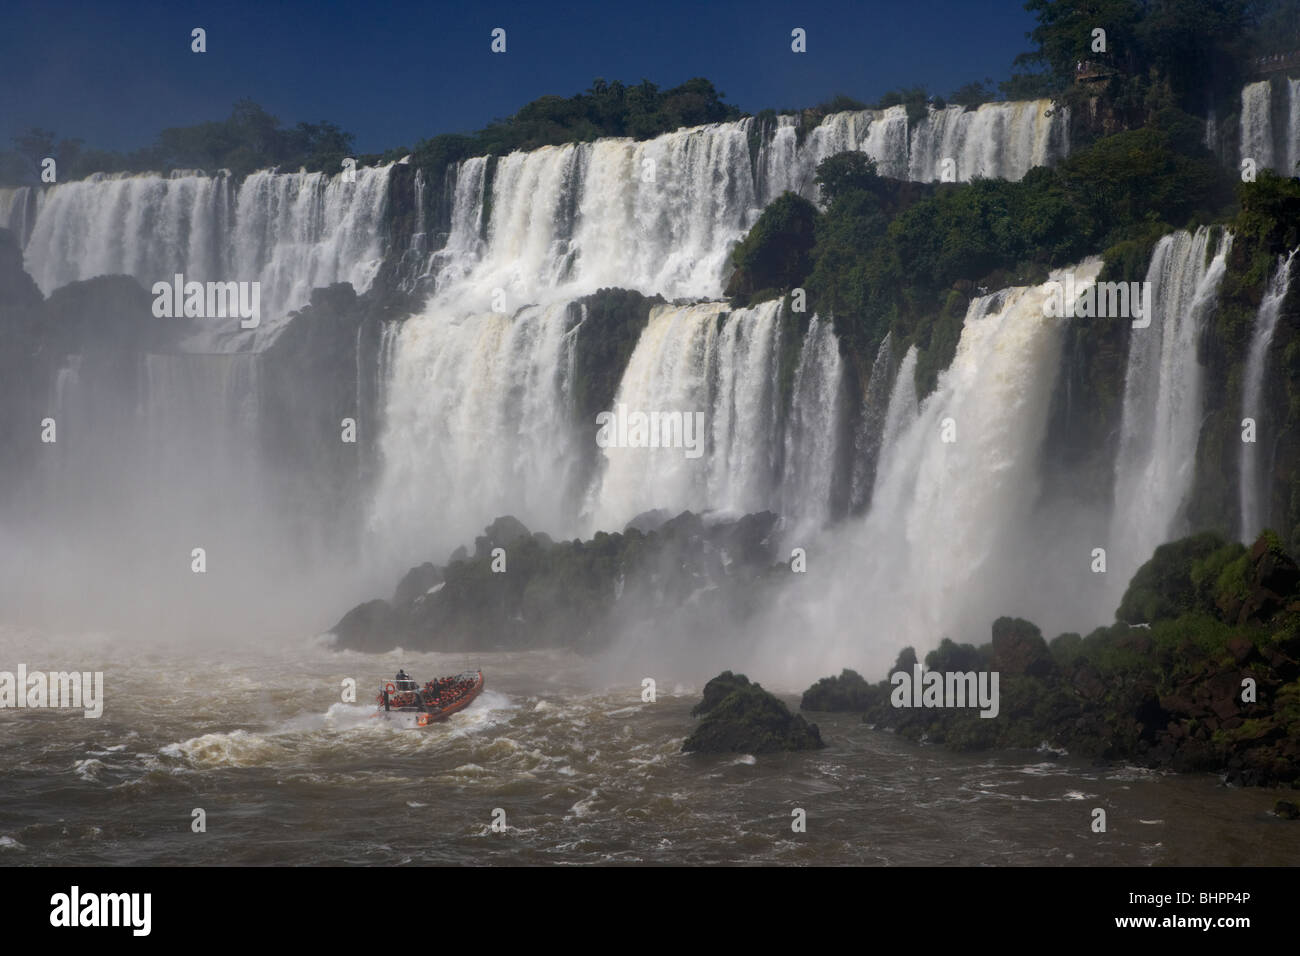 Les touristes en bateau approchant les chutes d'eau à parc national de l'Iguazu, Argentine, Amérique du Sud Banque D'Images